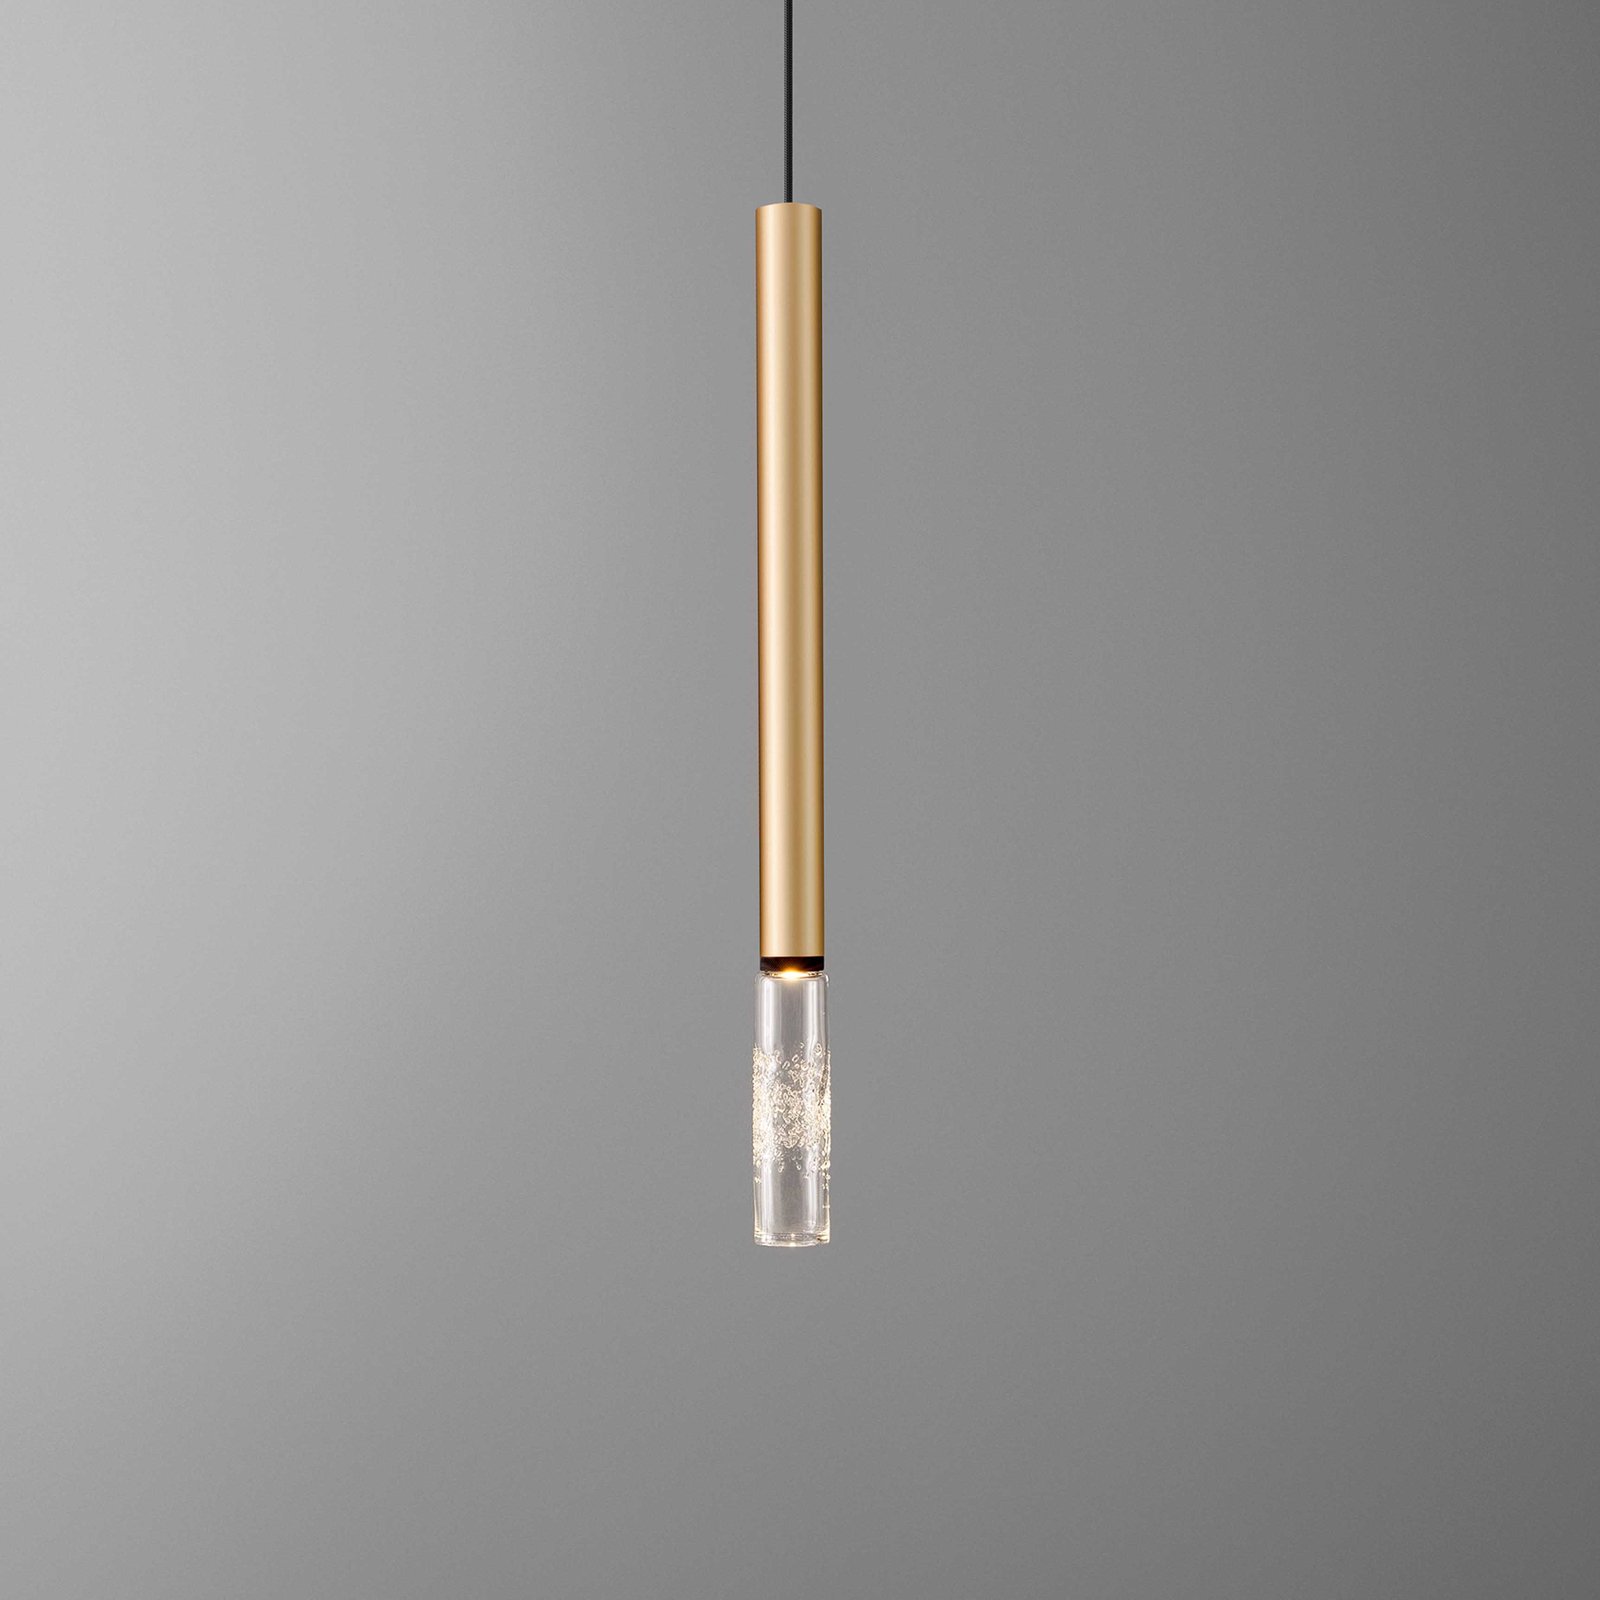 OLEV Beam Stick Glass on/off 2 700 K 55,3 cm zlatá